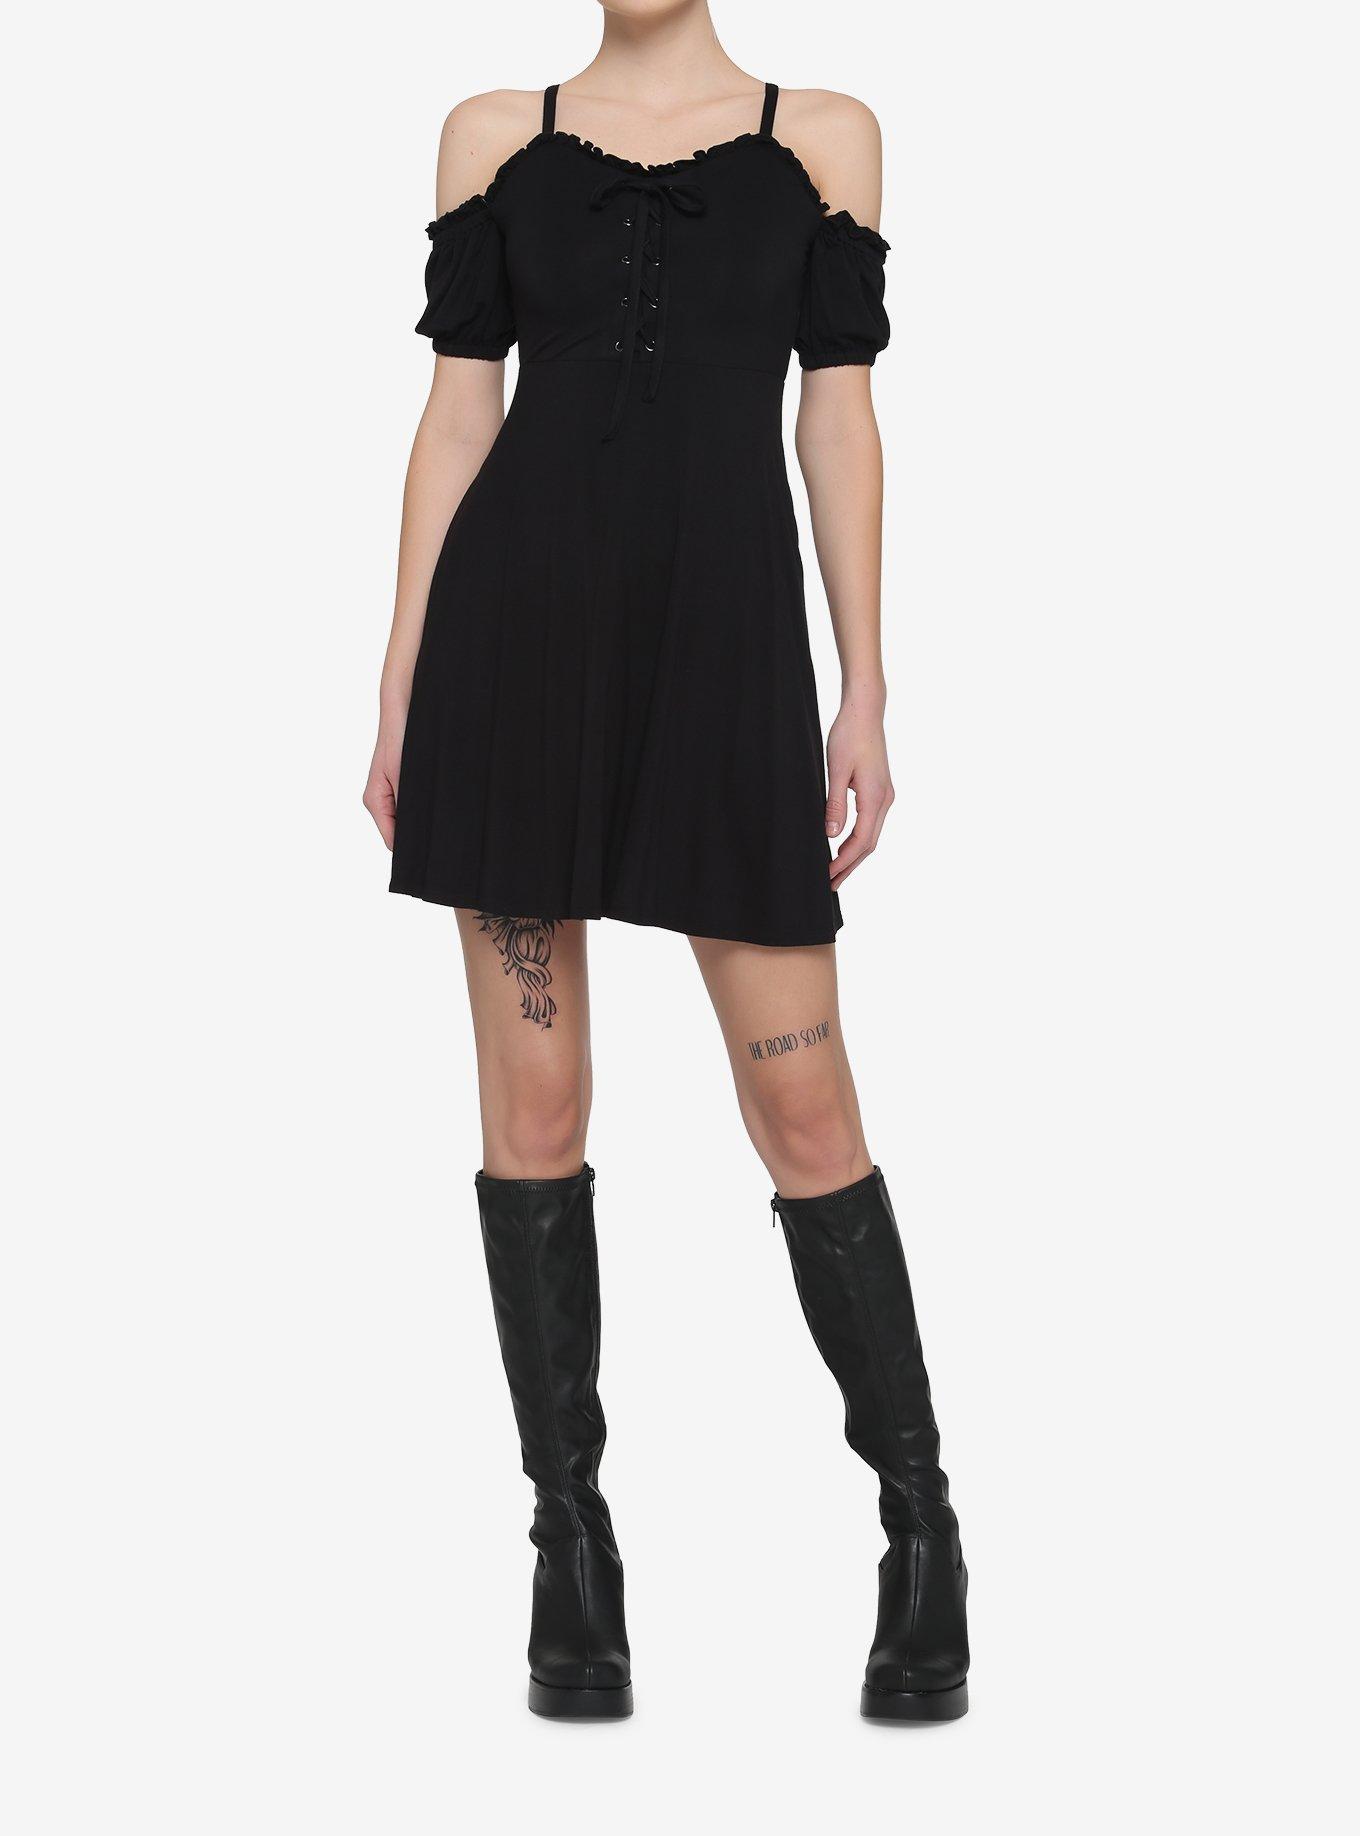 Black Lace-Up Cold Shoulder Puff Sleeve Dress, BLACK, alternate